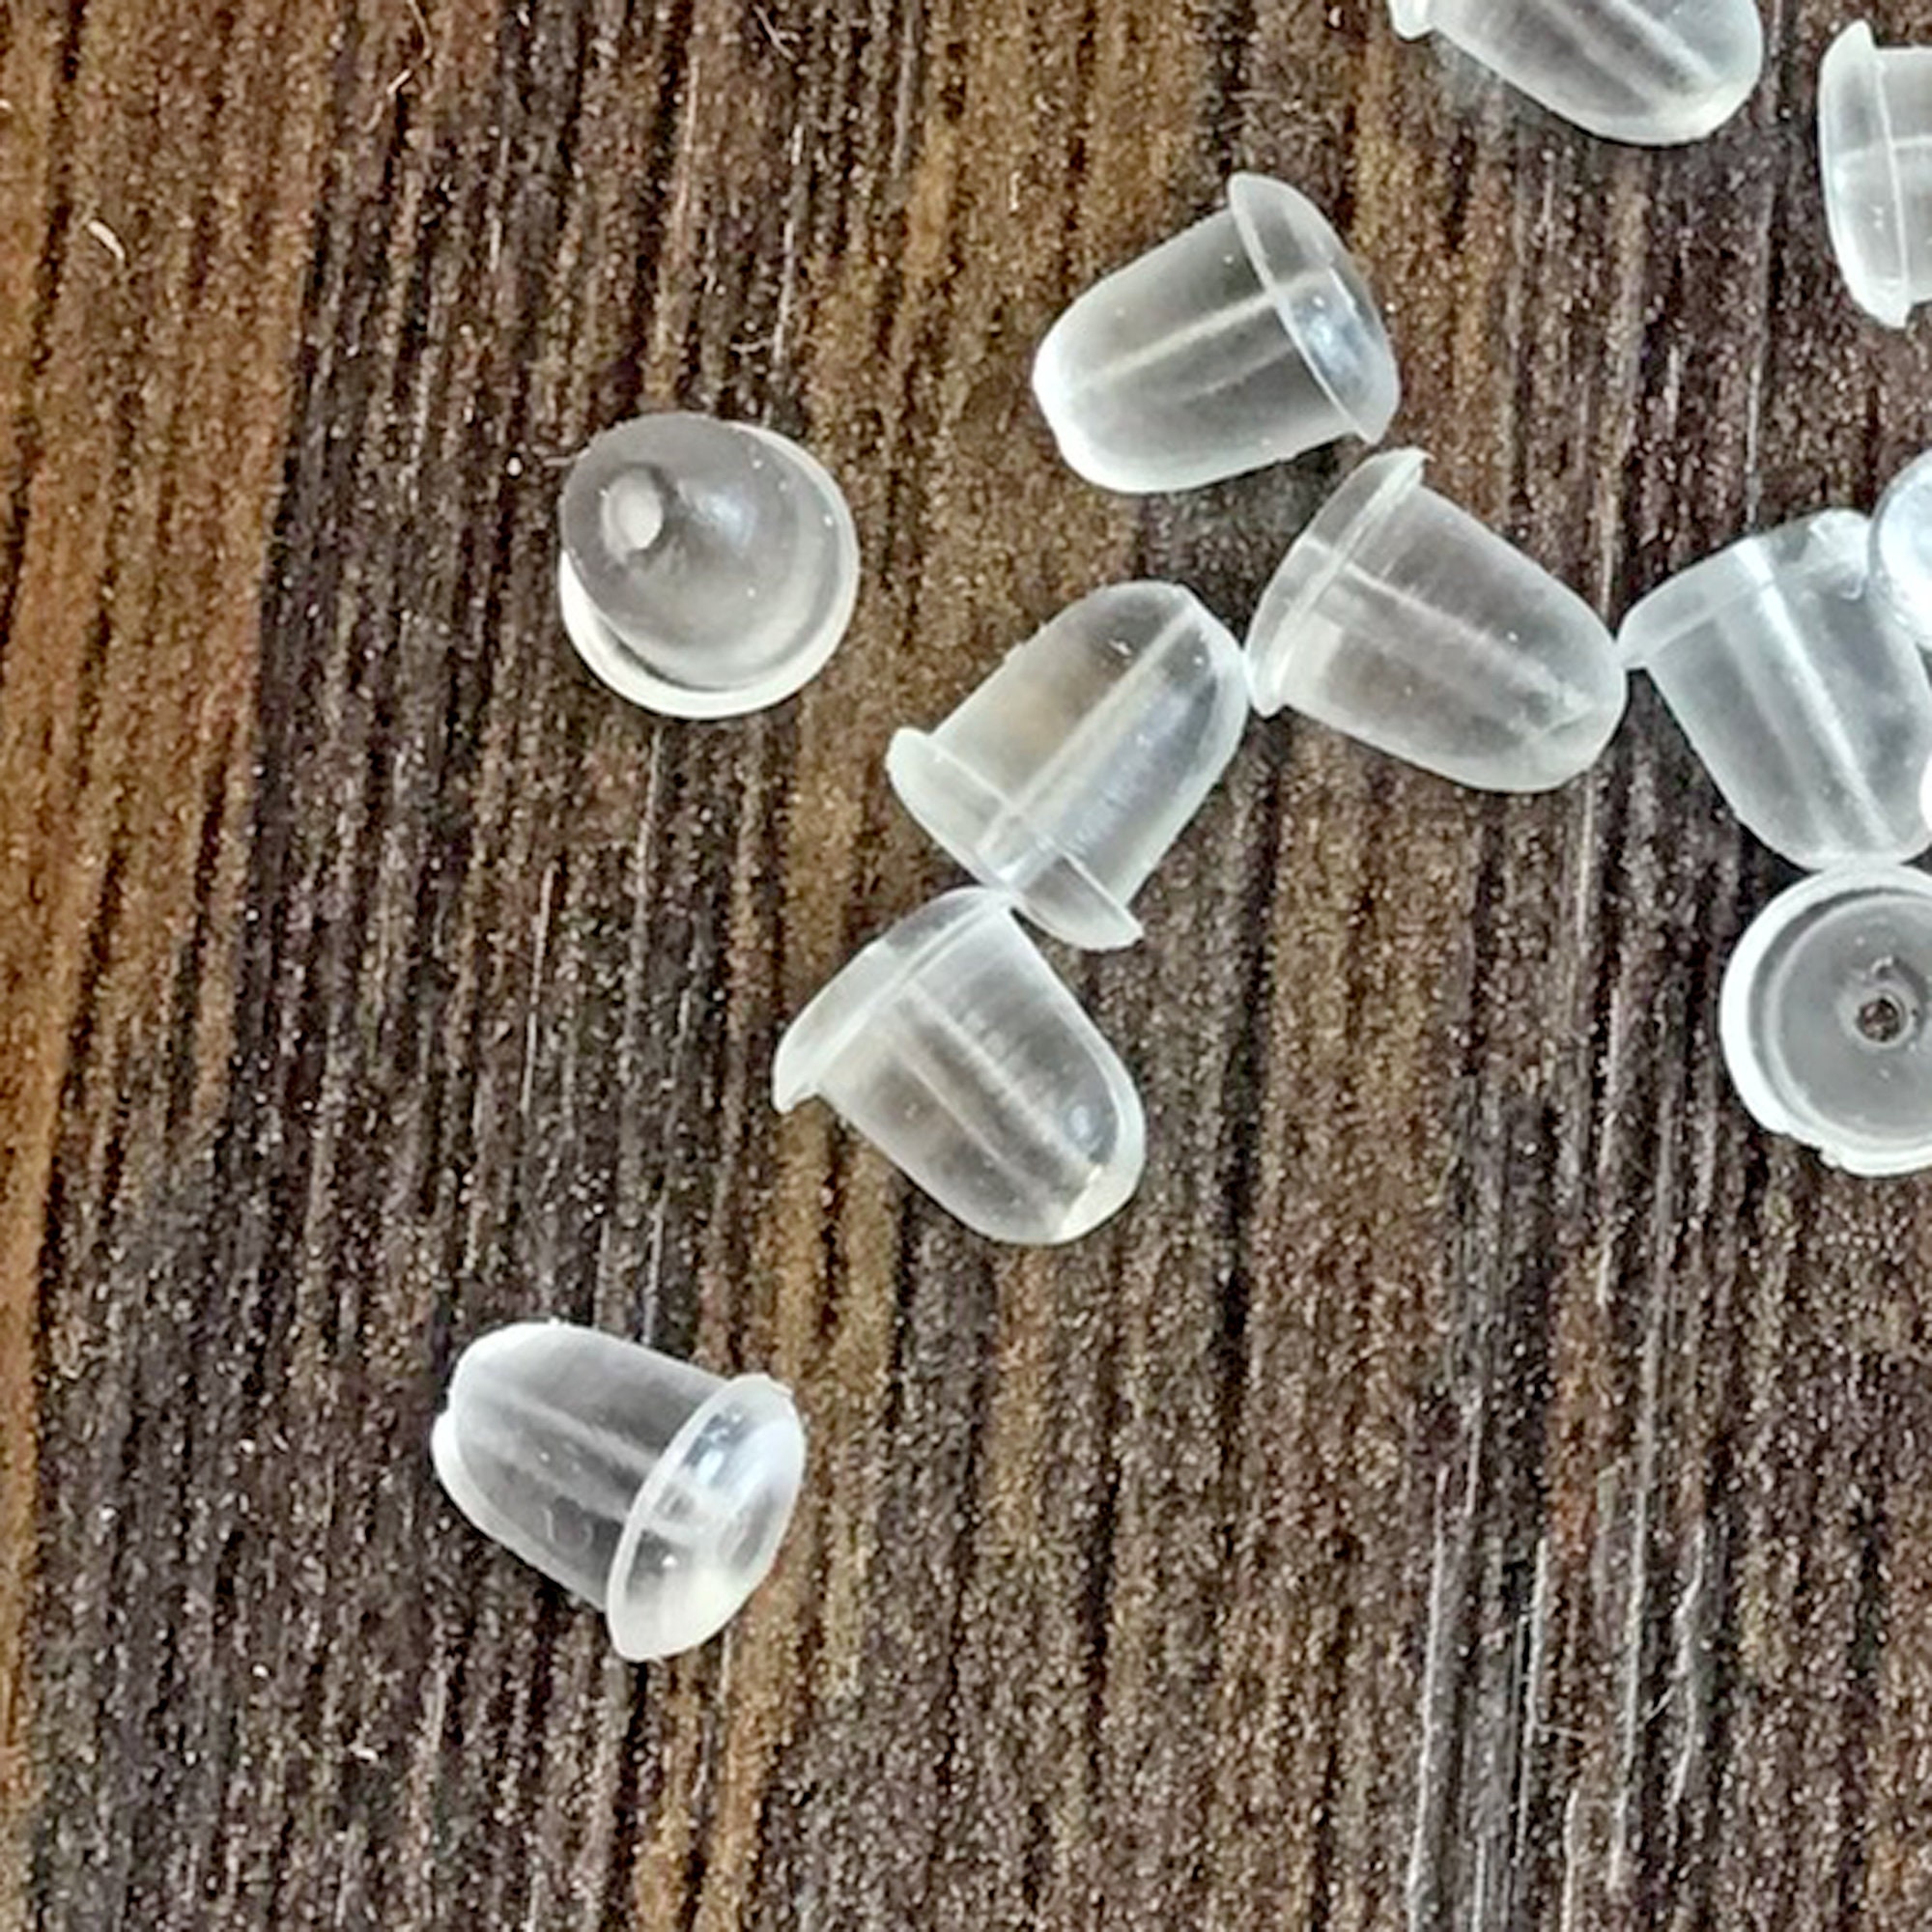 Wholesale Clear Plastic Ear Hooks Back Post Nuts Rubber Earring